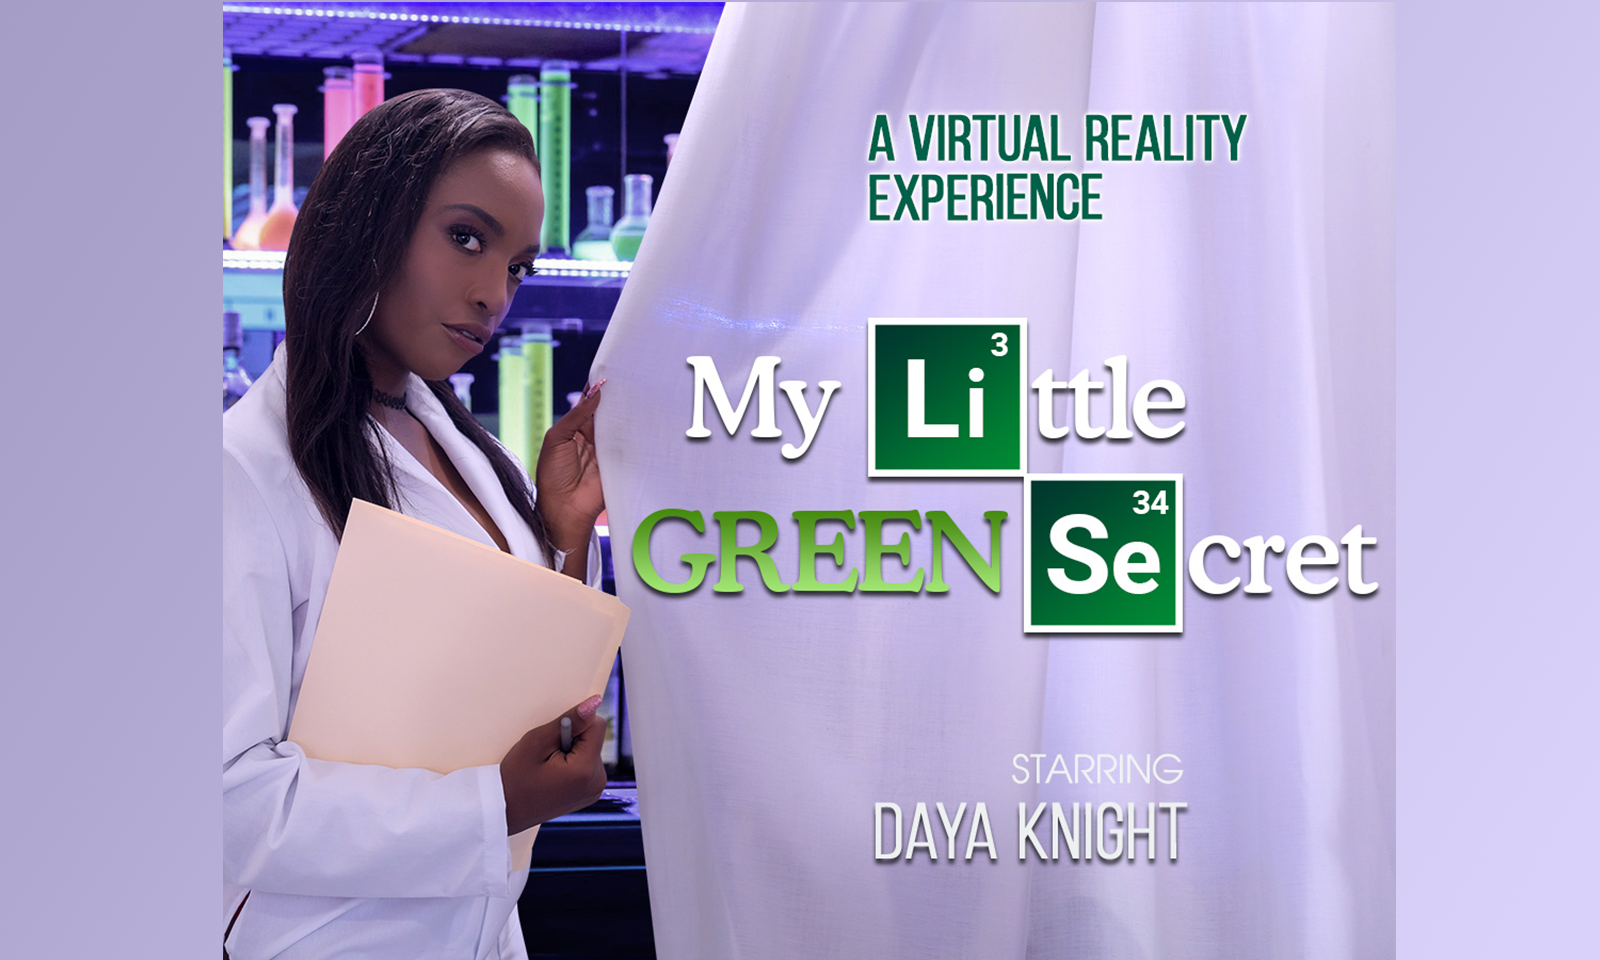 Daya Knight Reveals Her 'Little Green Secret' In Virtual Reality